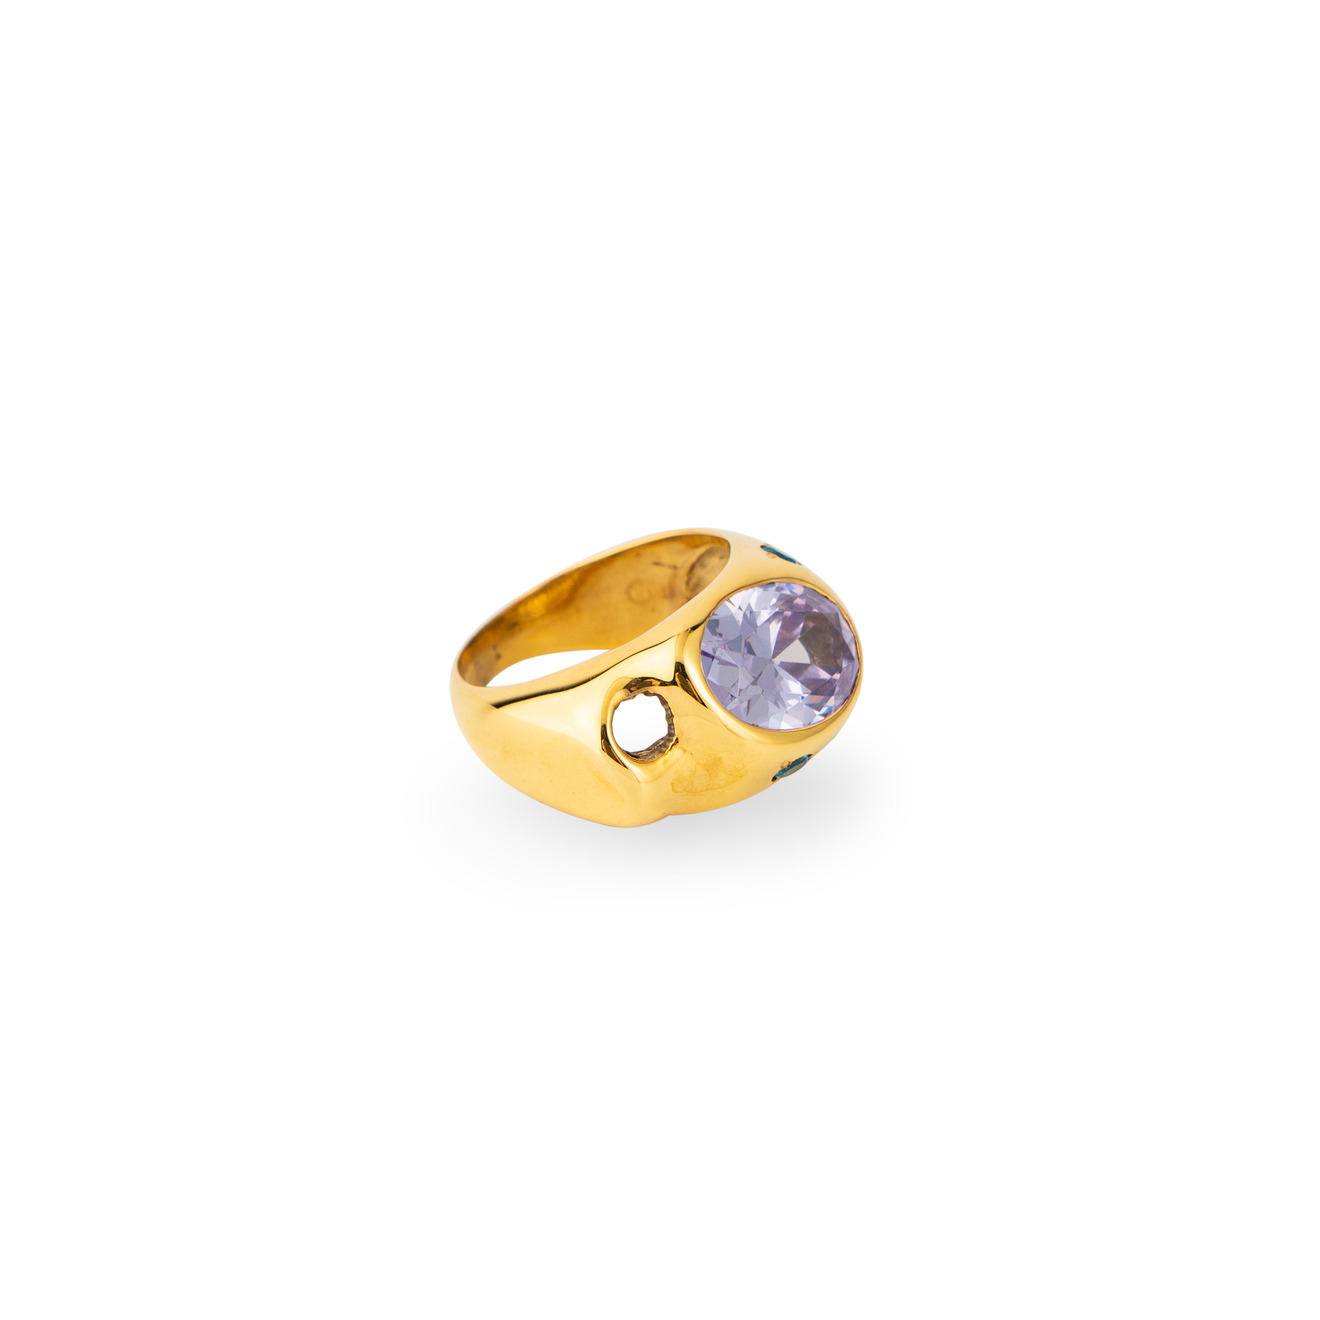 Janashia Золотистое кольцо Ava волнообразной формы со вставками из розово-голубых кристаллов